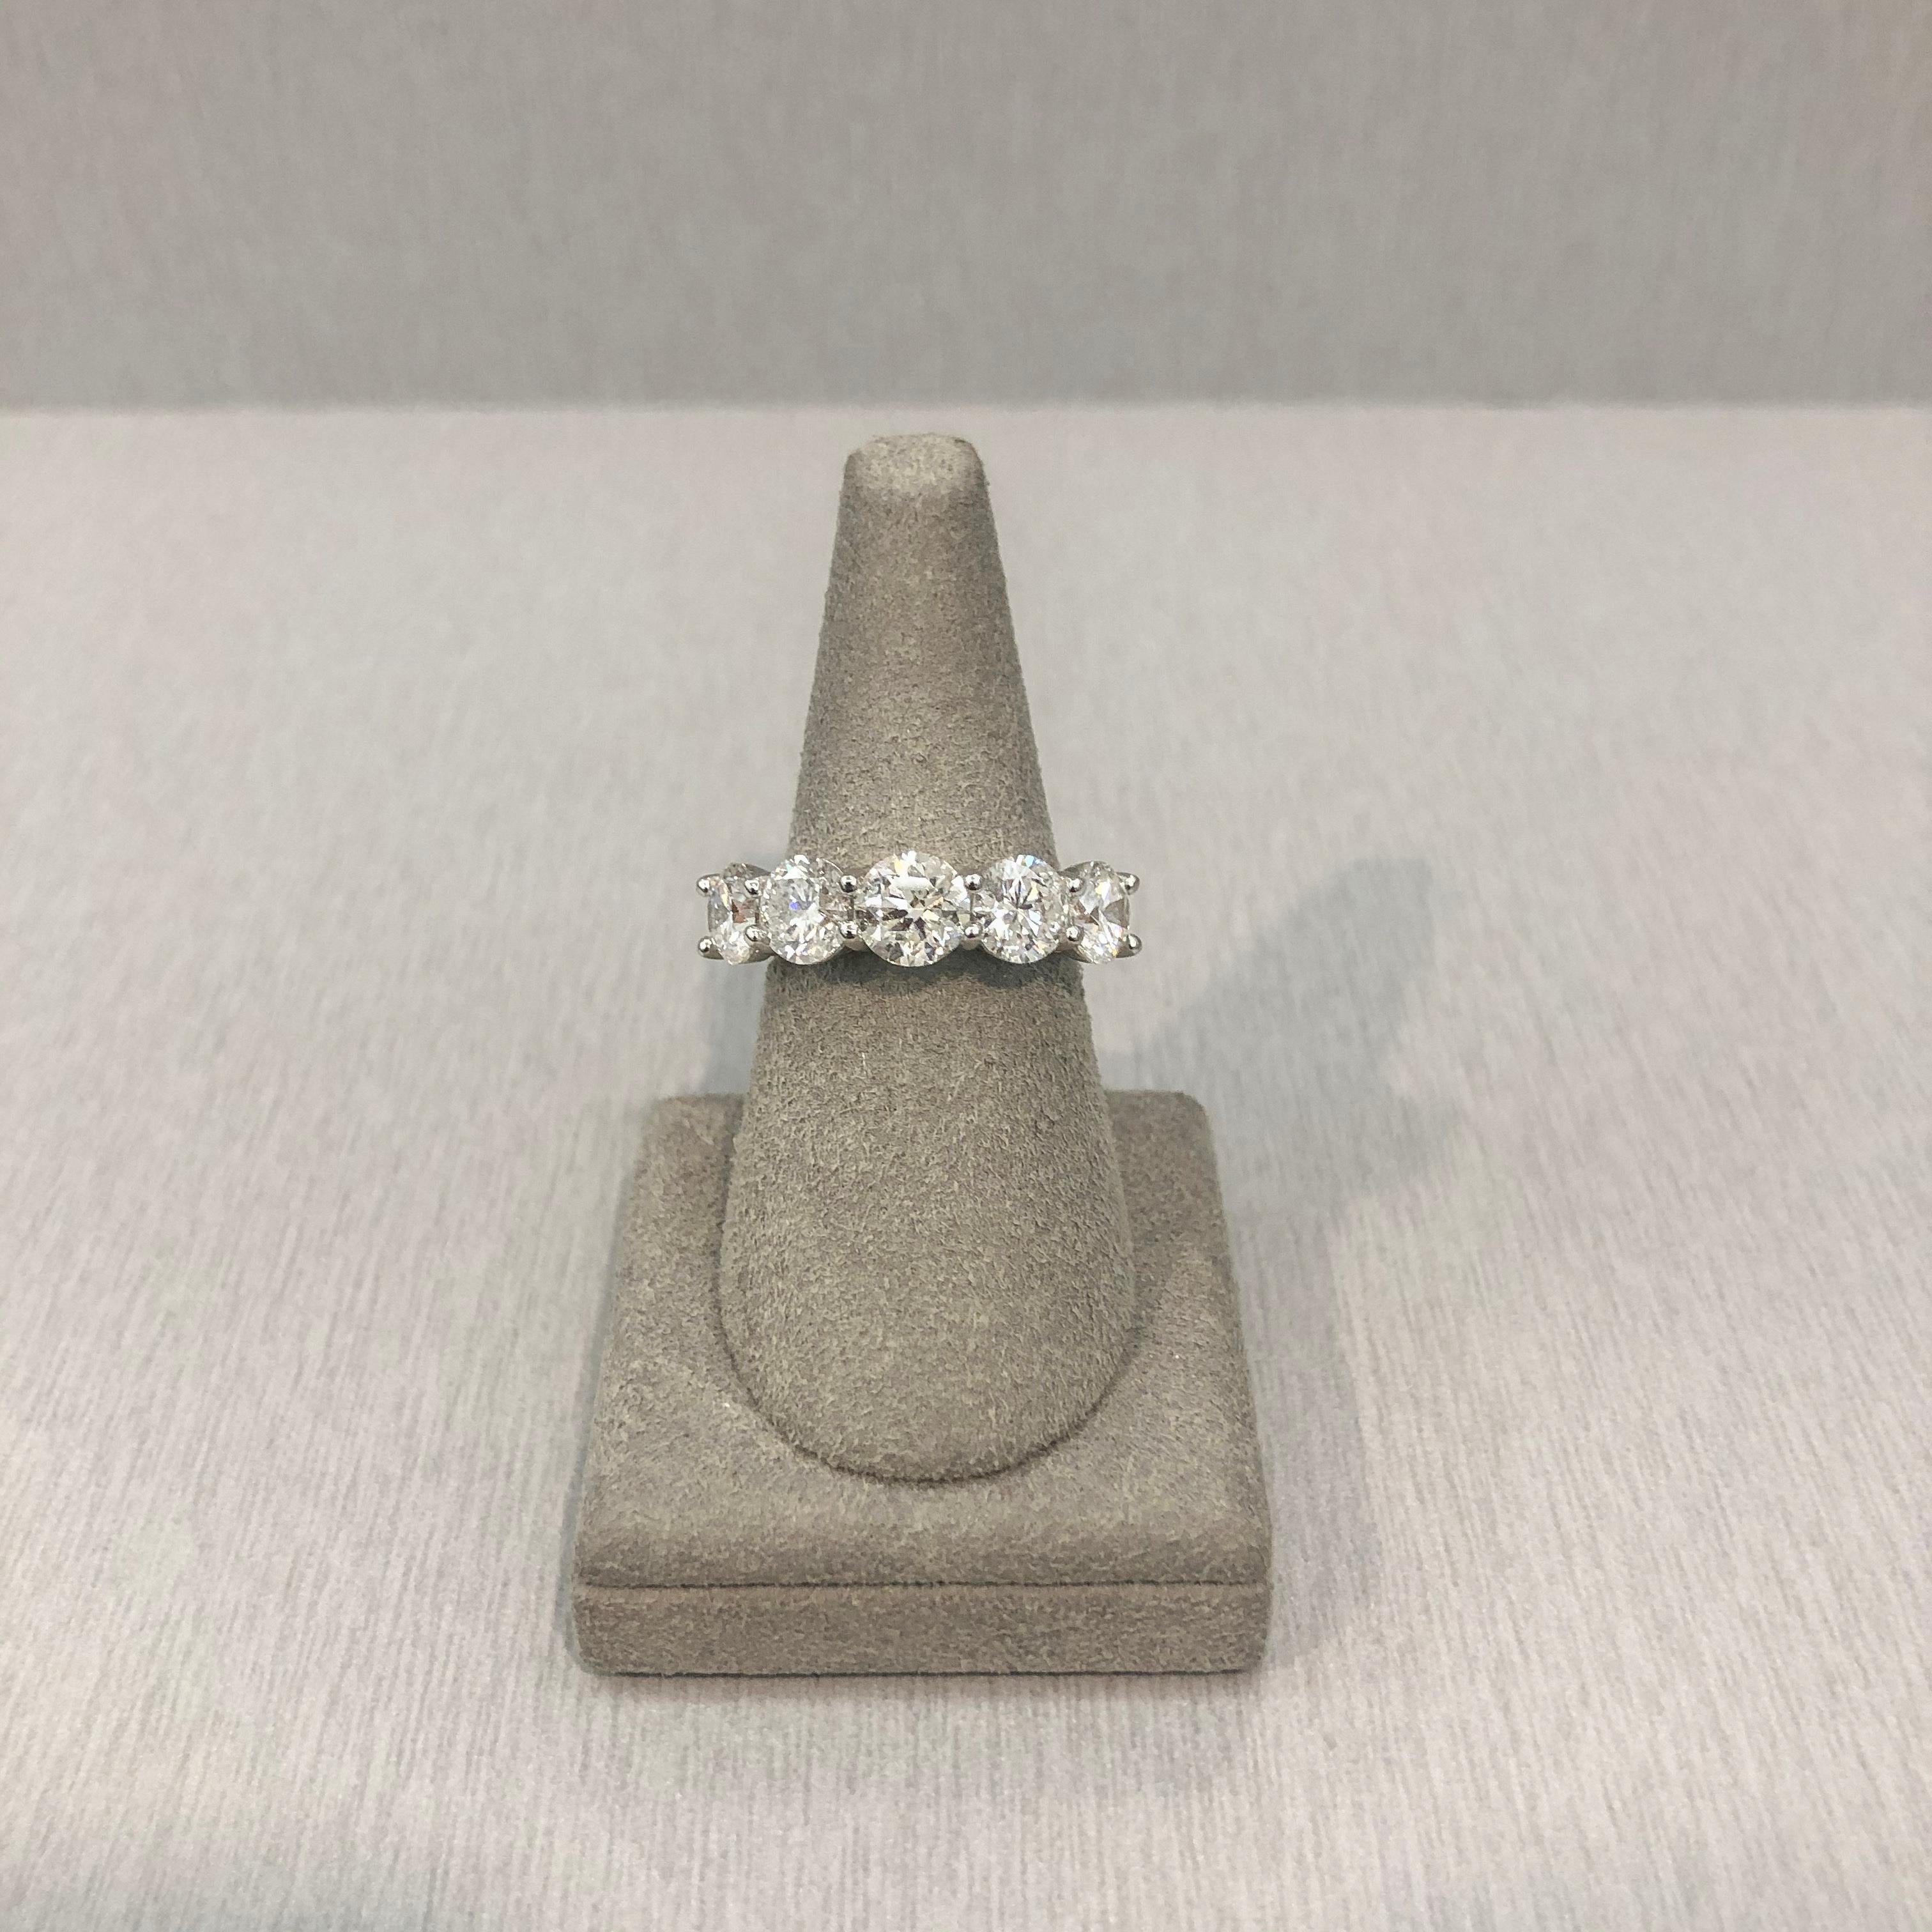 5 stone diamond ring price